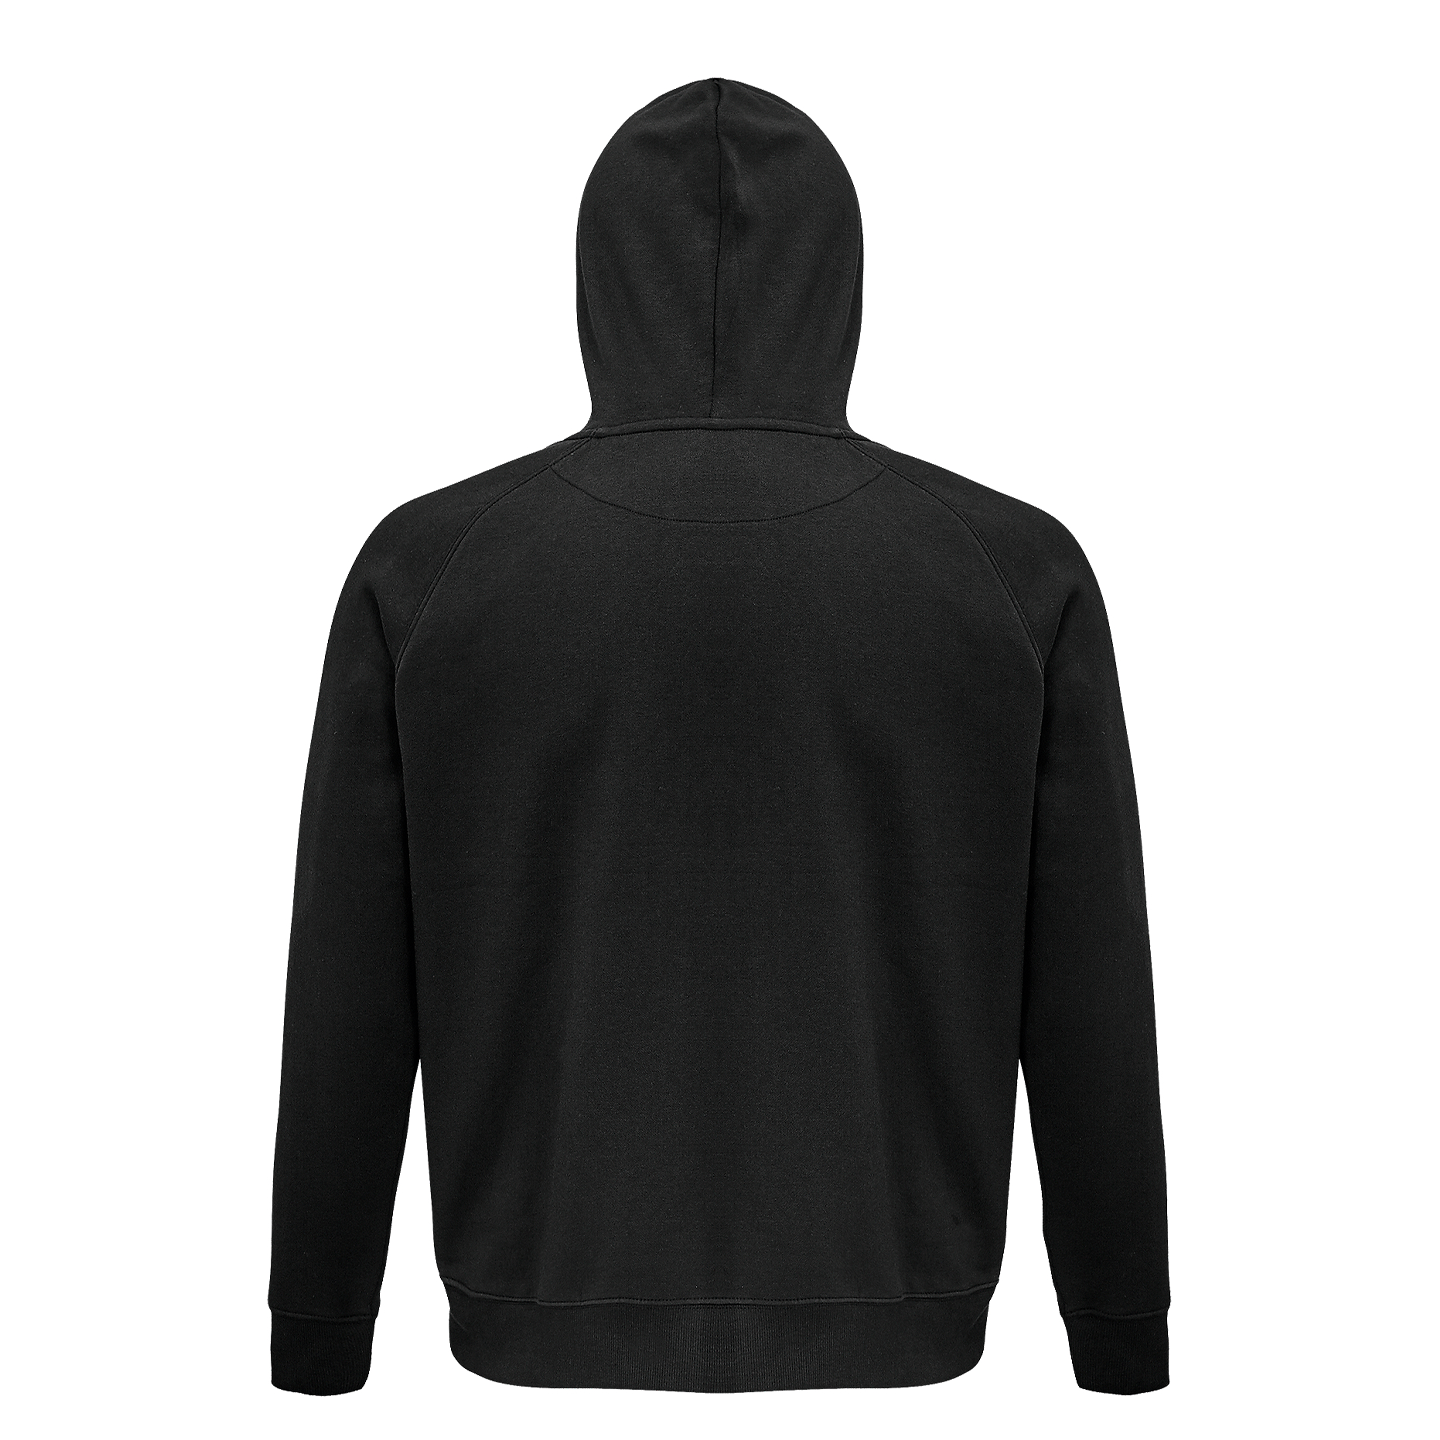 Skön hoodie med ett enkelt budskap - Tyst - Kläder och tygpåsar med eget  tryck